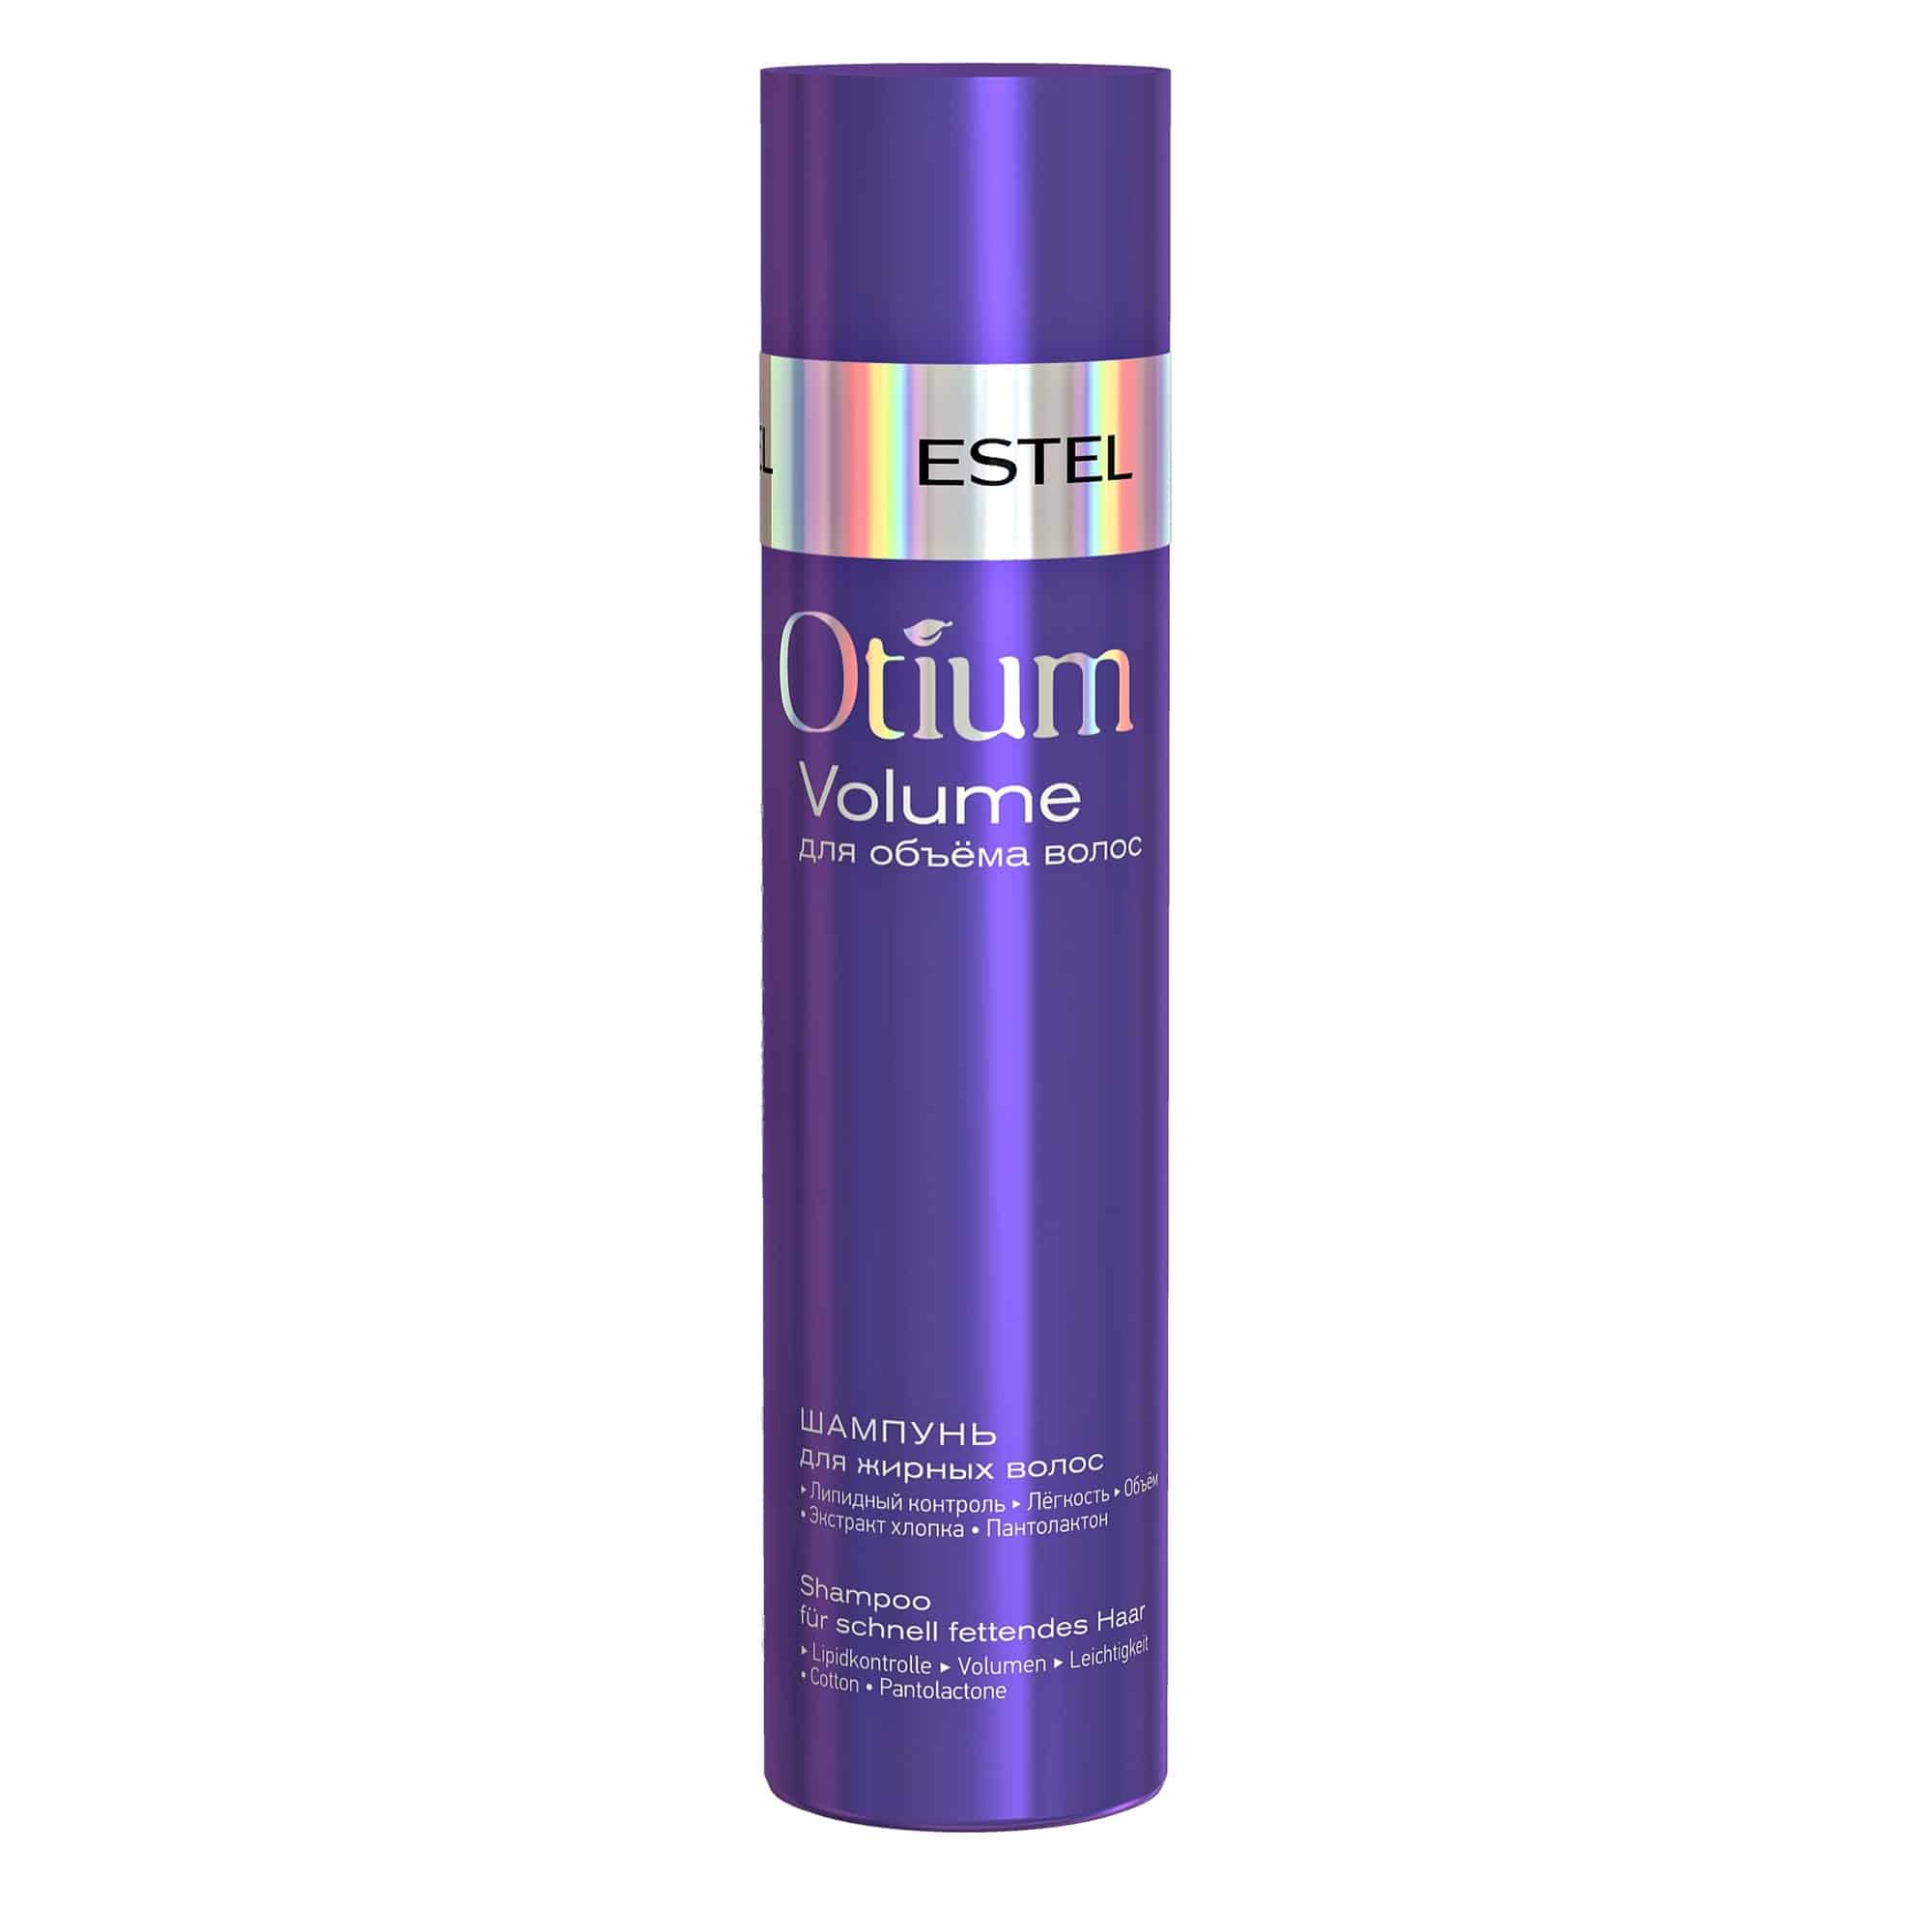 ESTEL'den hızlı yağlı saçlar için OTIUM VOLUME şampuanı